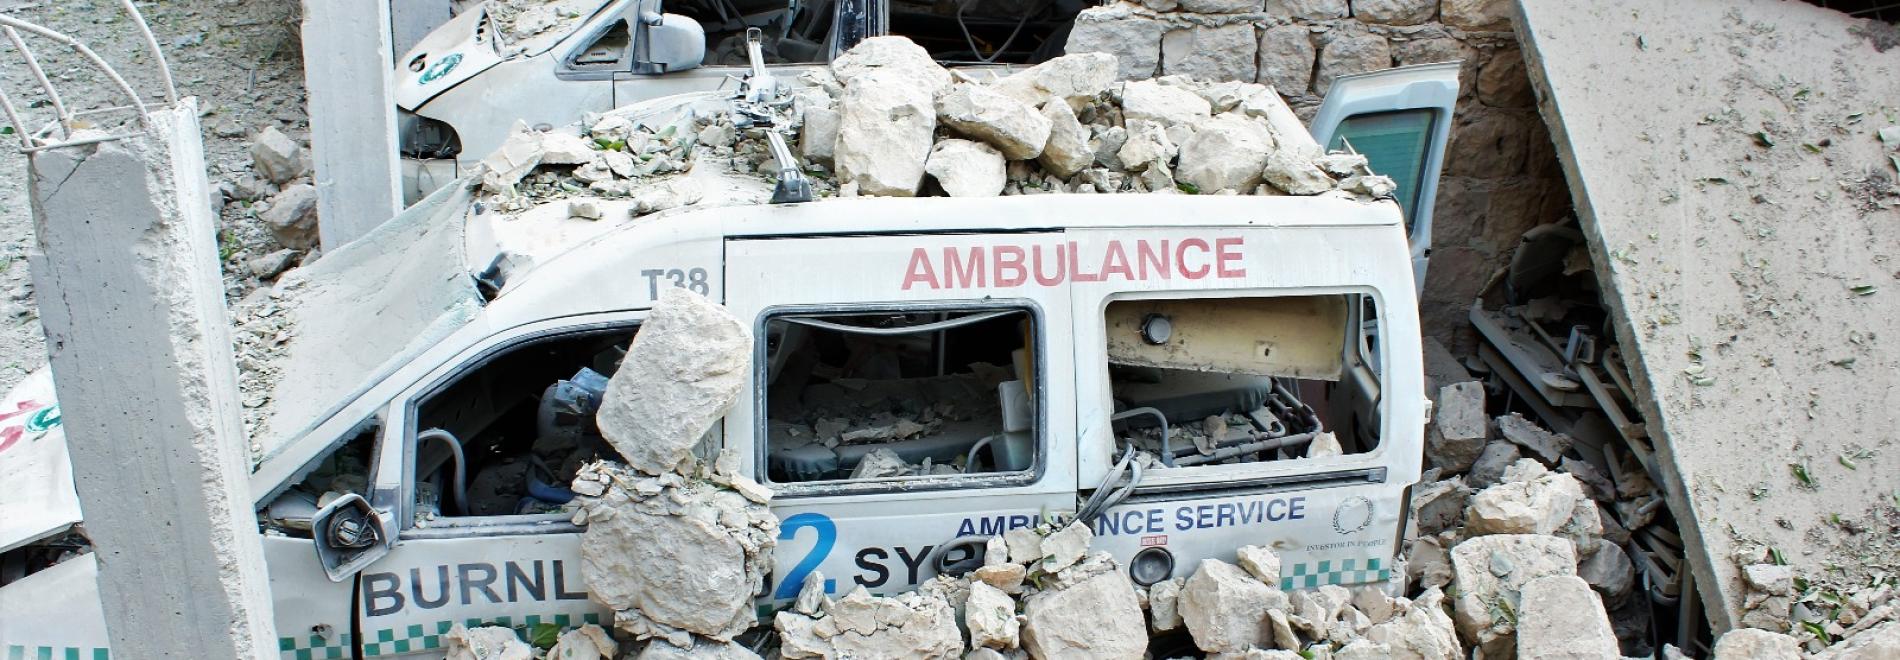 Ein Behandlungsbus unter Trümmern im syrischen Idlib 2016. Foto: Ärzte der Welt